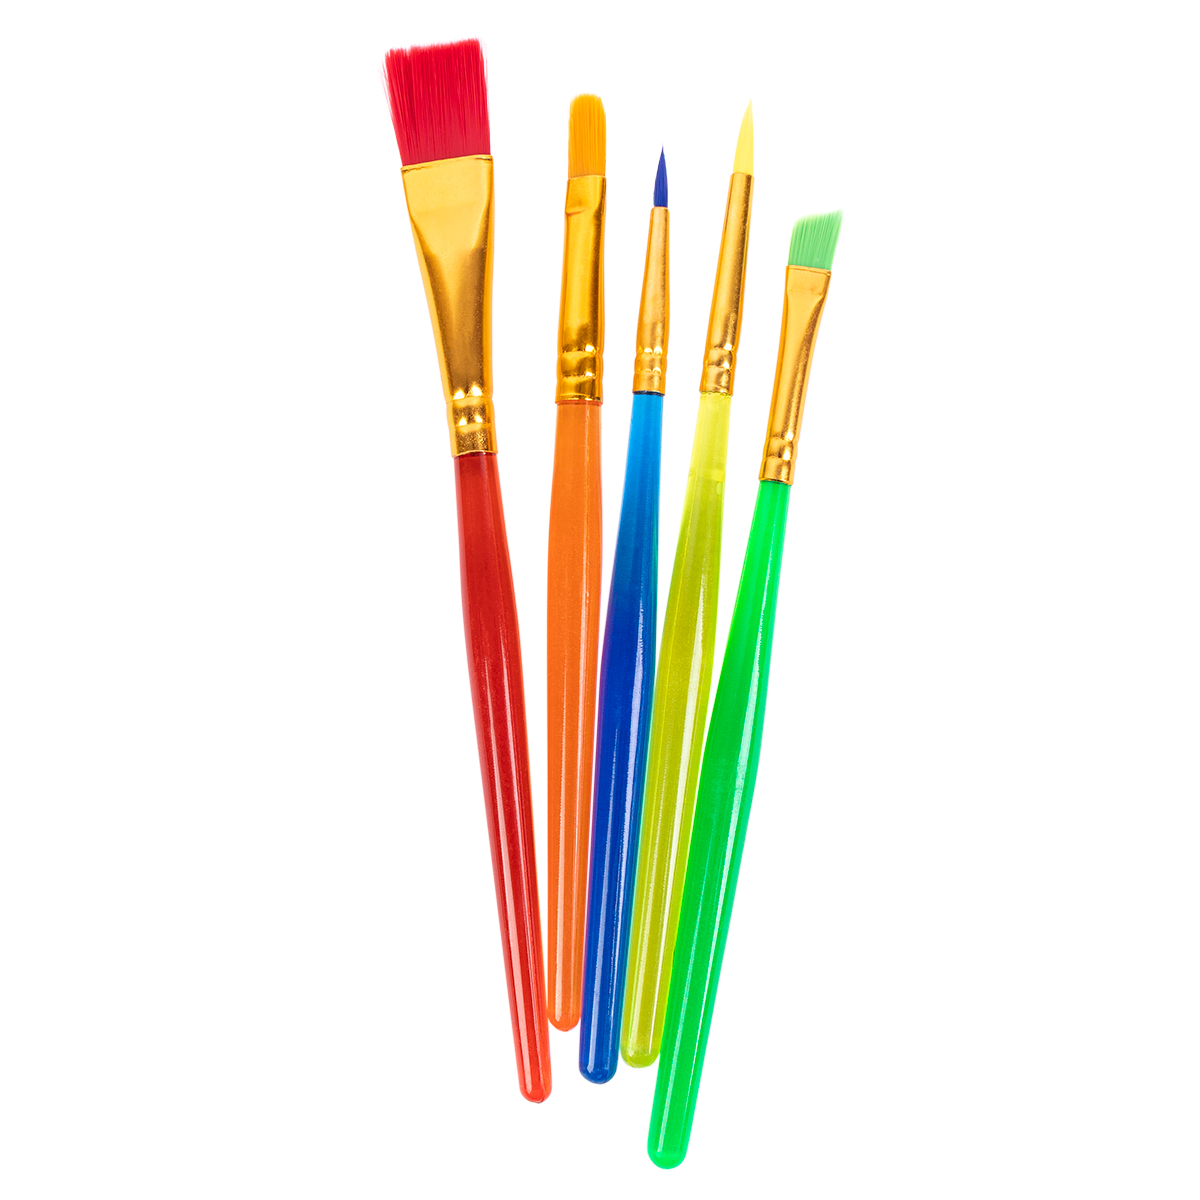 Набор цветных кистей 5шт "Играй" короткая ручка LTB 01-05 | Магазин канцтоваров и игрушек Львёнок